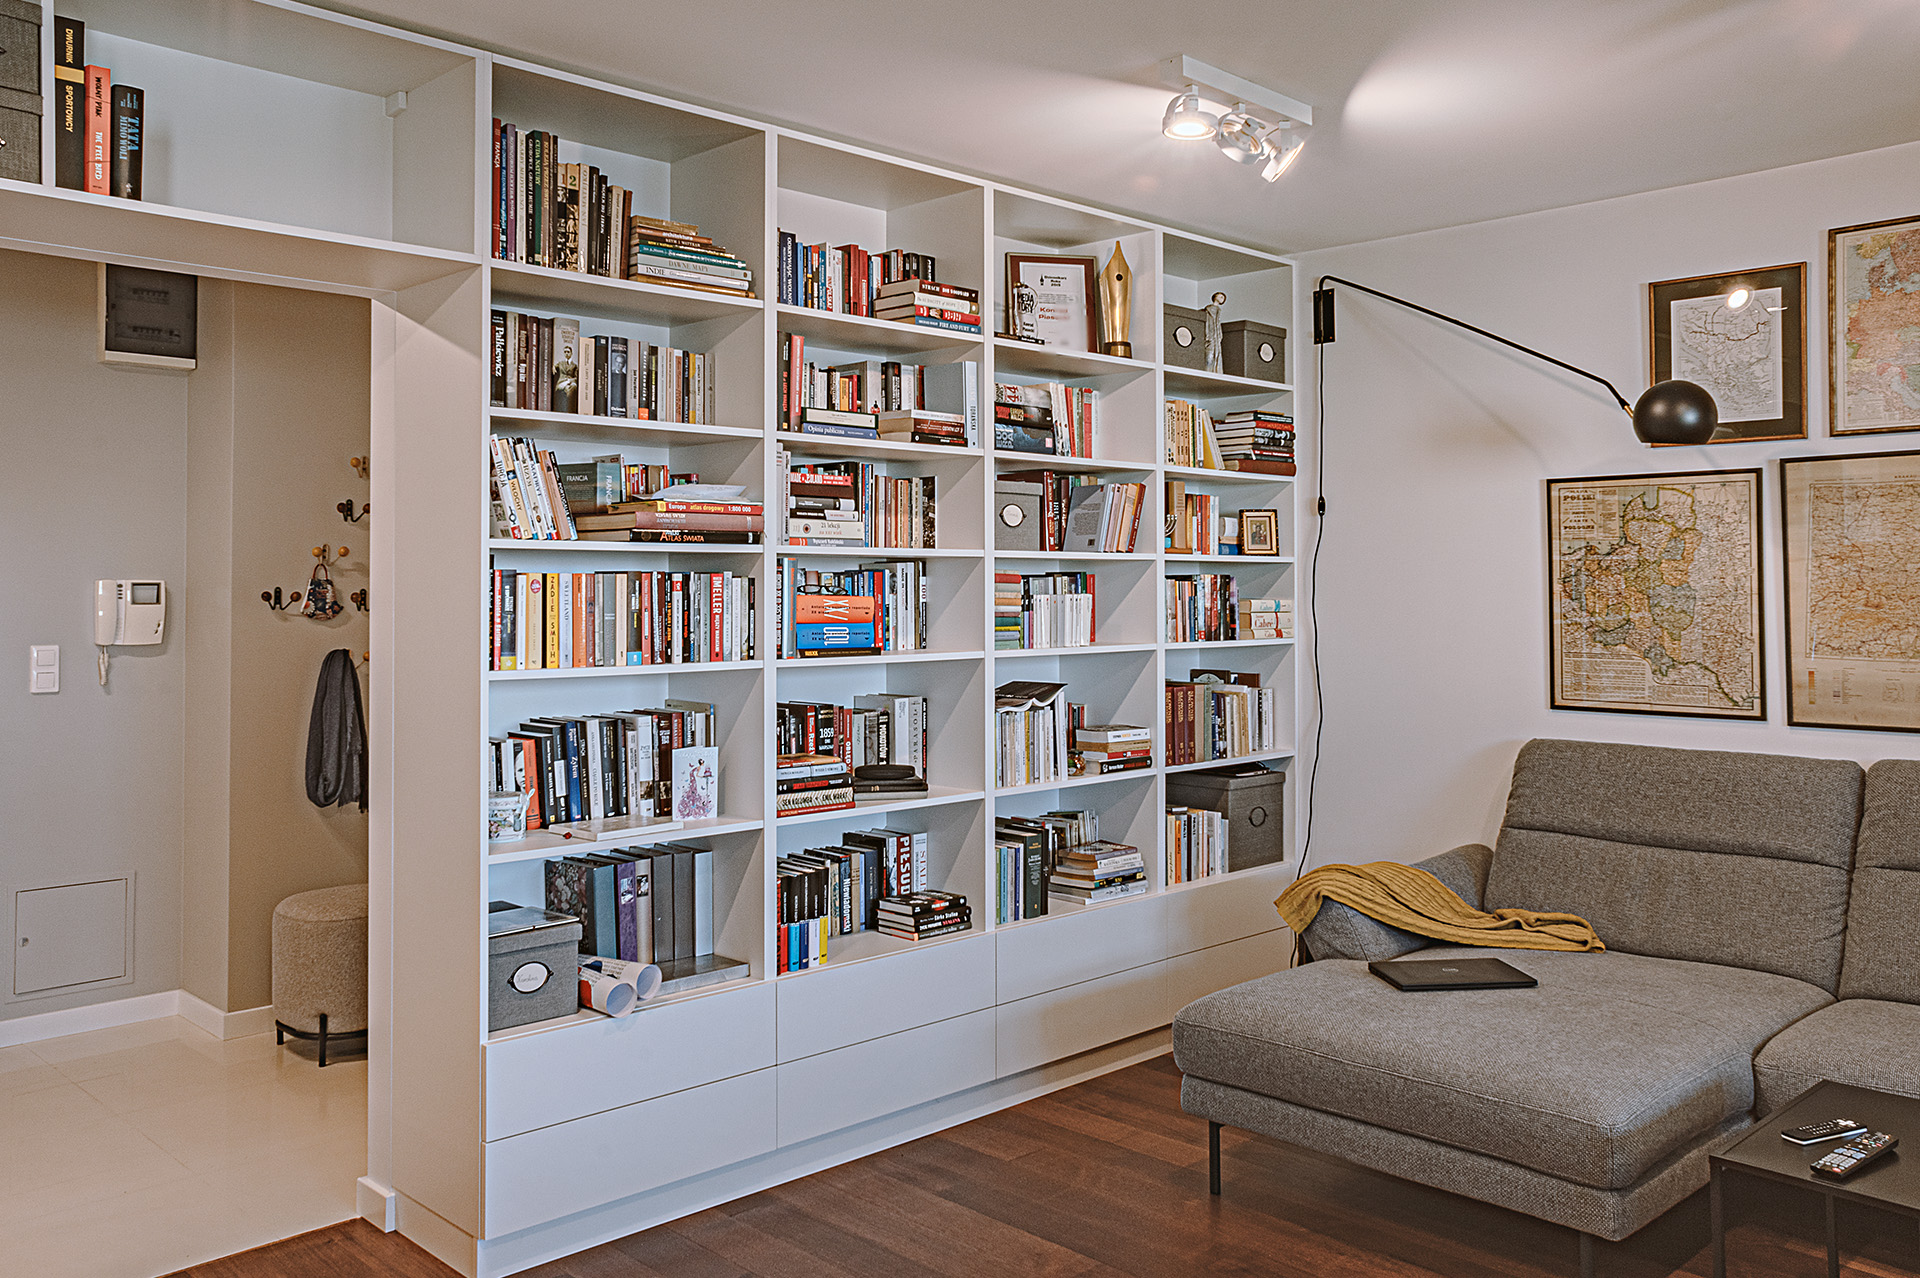 Głęboki regał na książki zajmuje całą wysokość i szerokość ściany na styku salonu z korytarzem, także nad otworem drzwiowym.